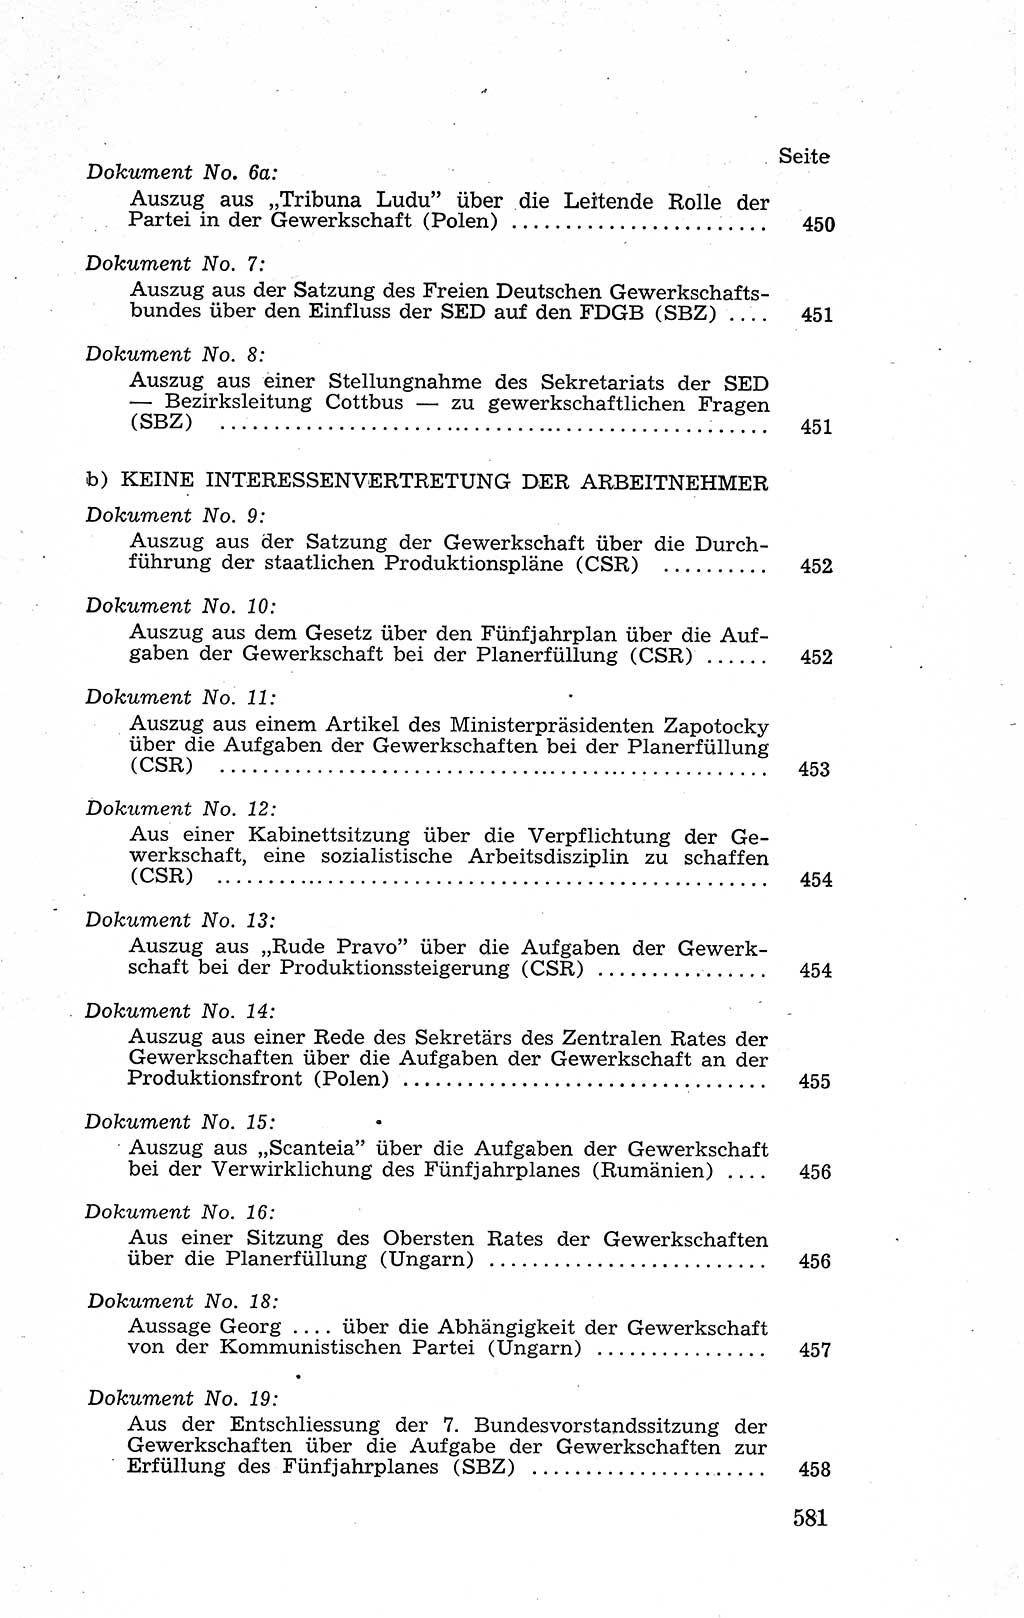 Recht in Fesseln, Dokumente, Internationale Juristen-Kommission [Bundesrepublik Deutschland (BRD)] 1955, Seite 581 (R. Dok. IJK BRD 1955, S. 581)